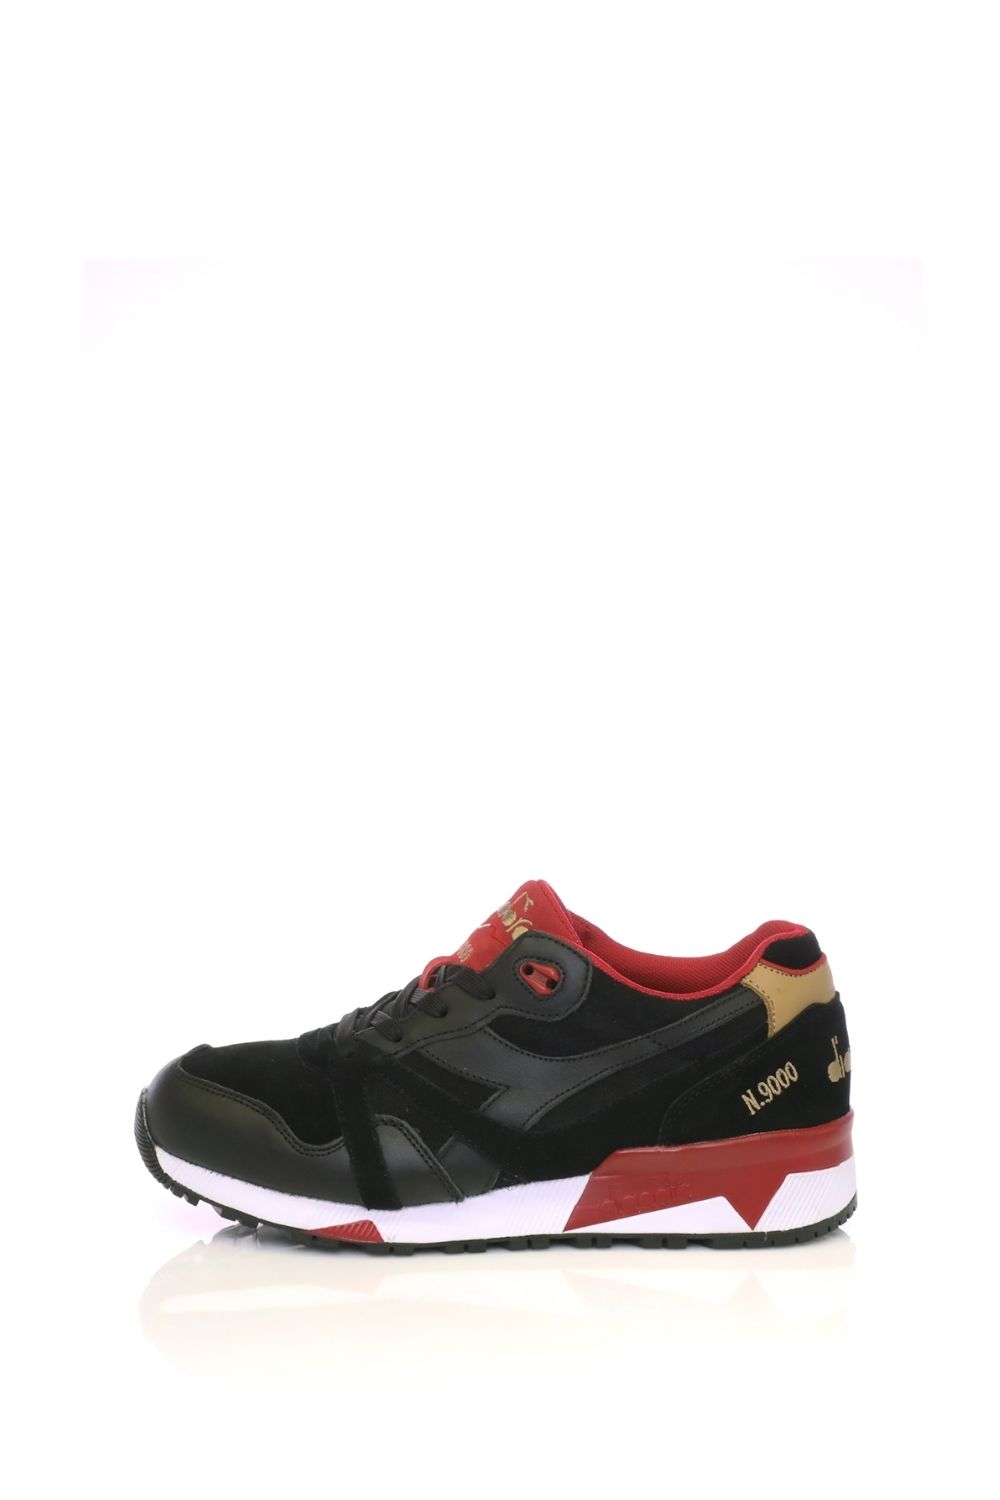 Ανδρικά/Παπούτσια/Αθλητικά/Running DIADORA - Unisex αθλητικά παπούτσια DIADORA μαύρα